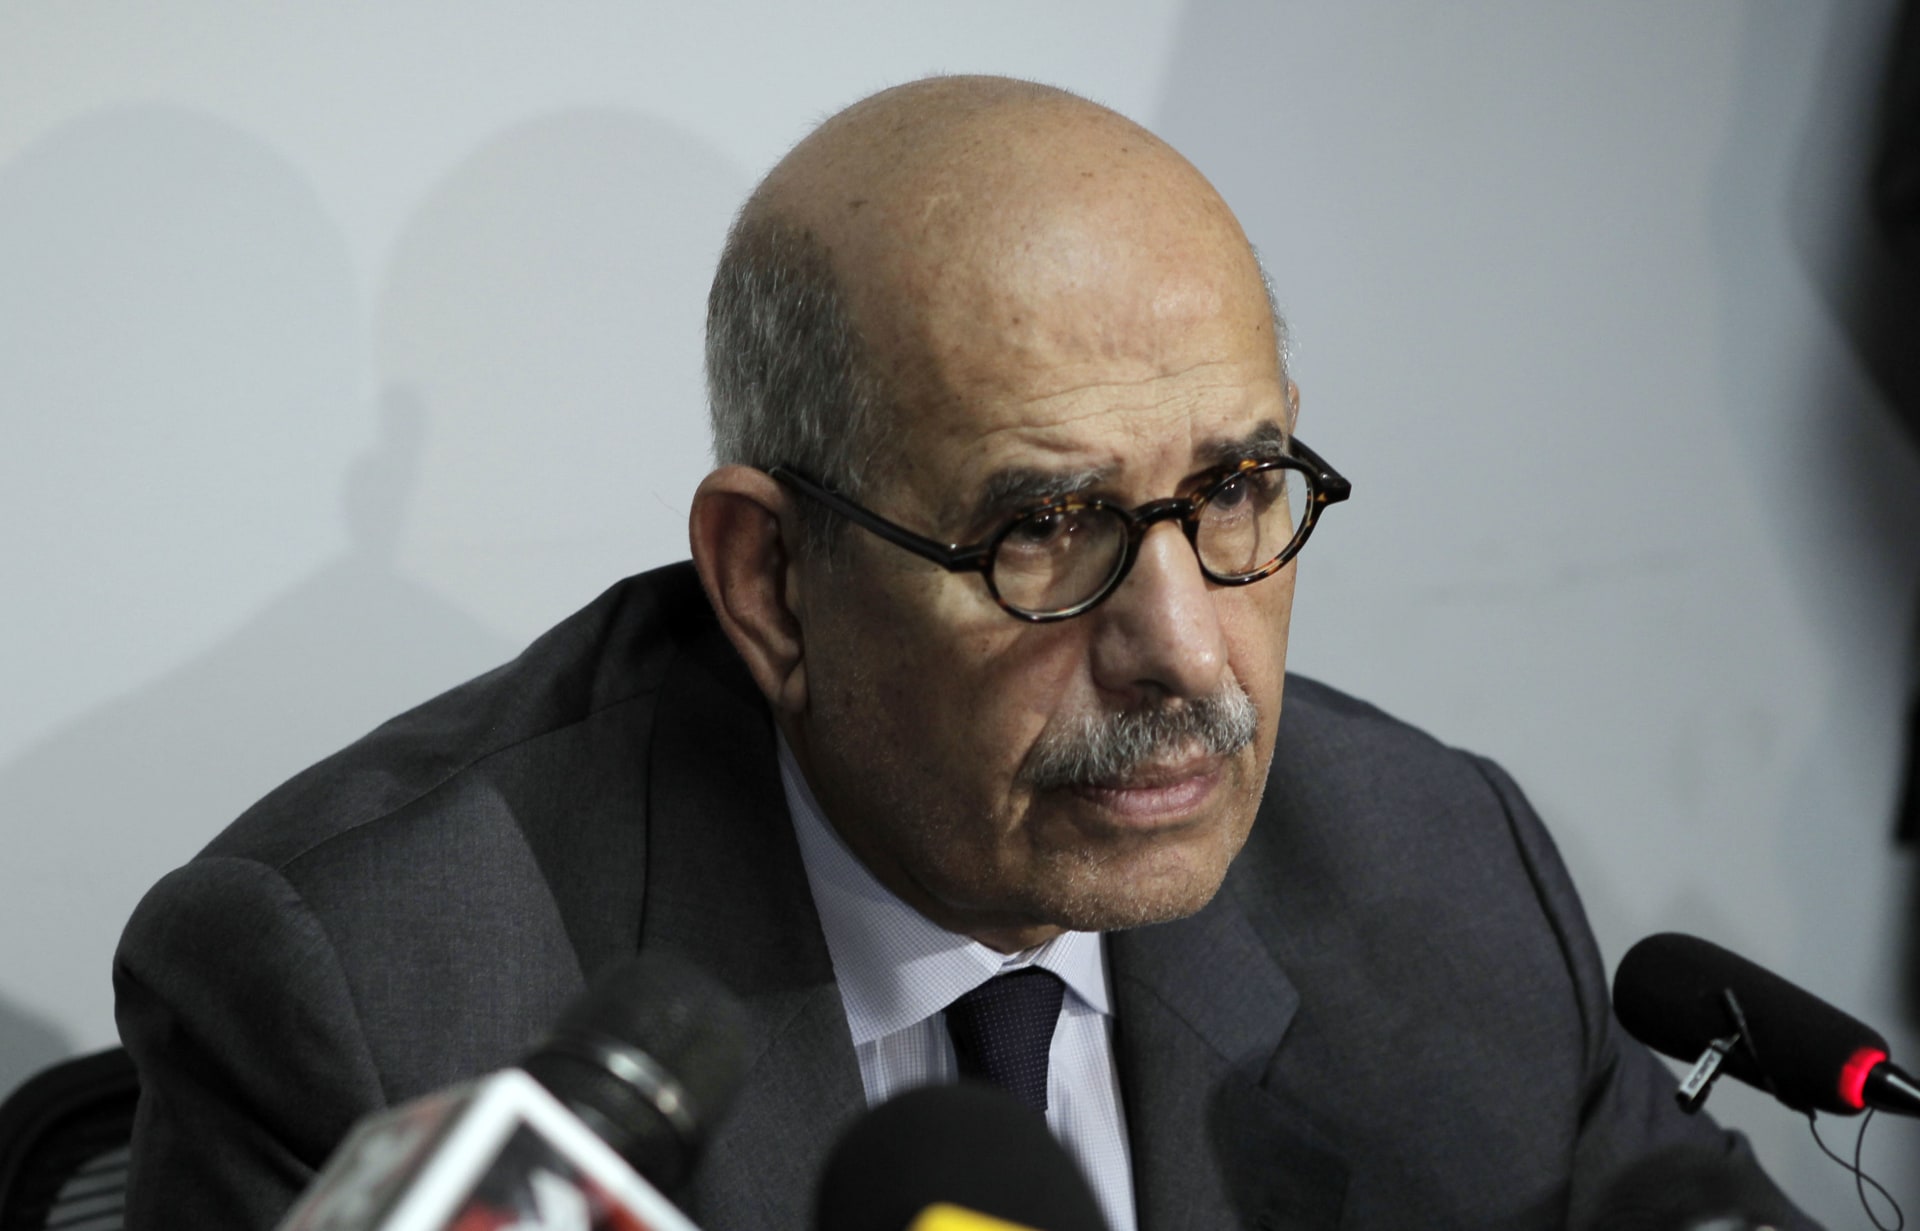 البرادعي يحذر من "الجهل" و"الغباء" في محاولة تغيير الدستور المصري